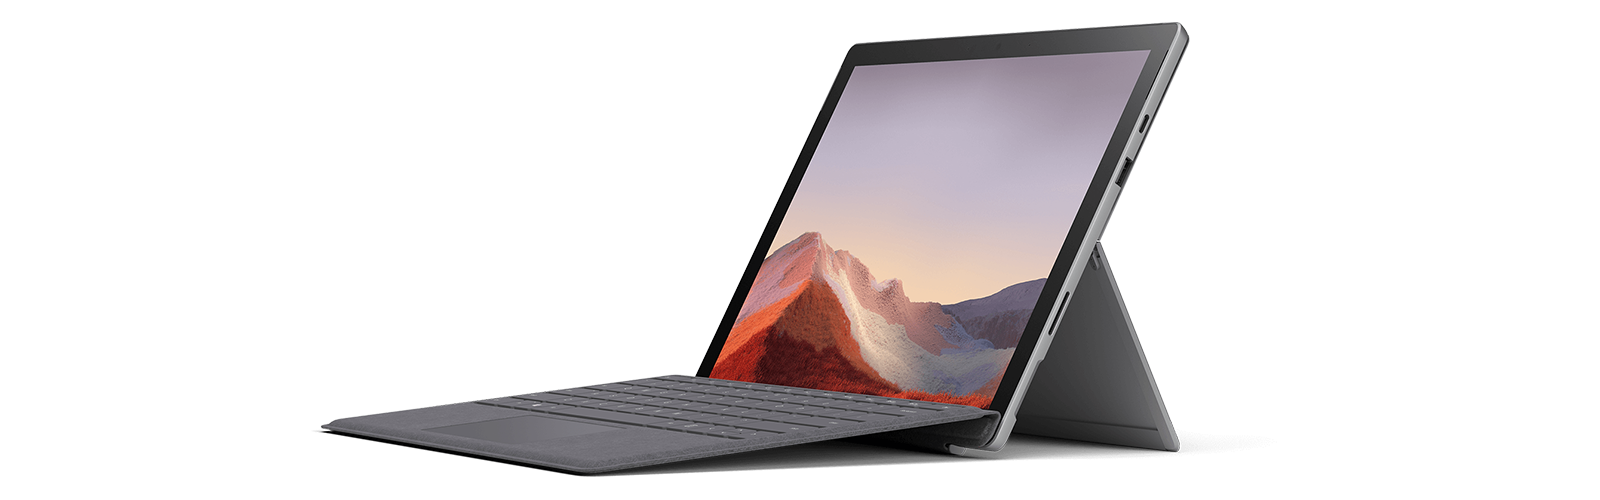 典雅黑和亮铂金的 Surface Pro 7 搭配各种颜色的键盘盖和配件